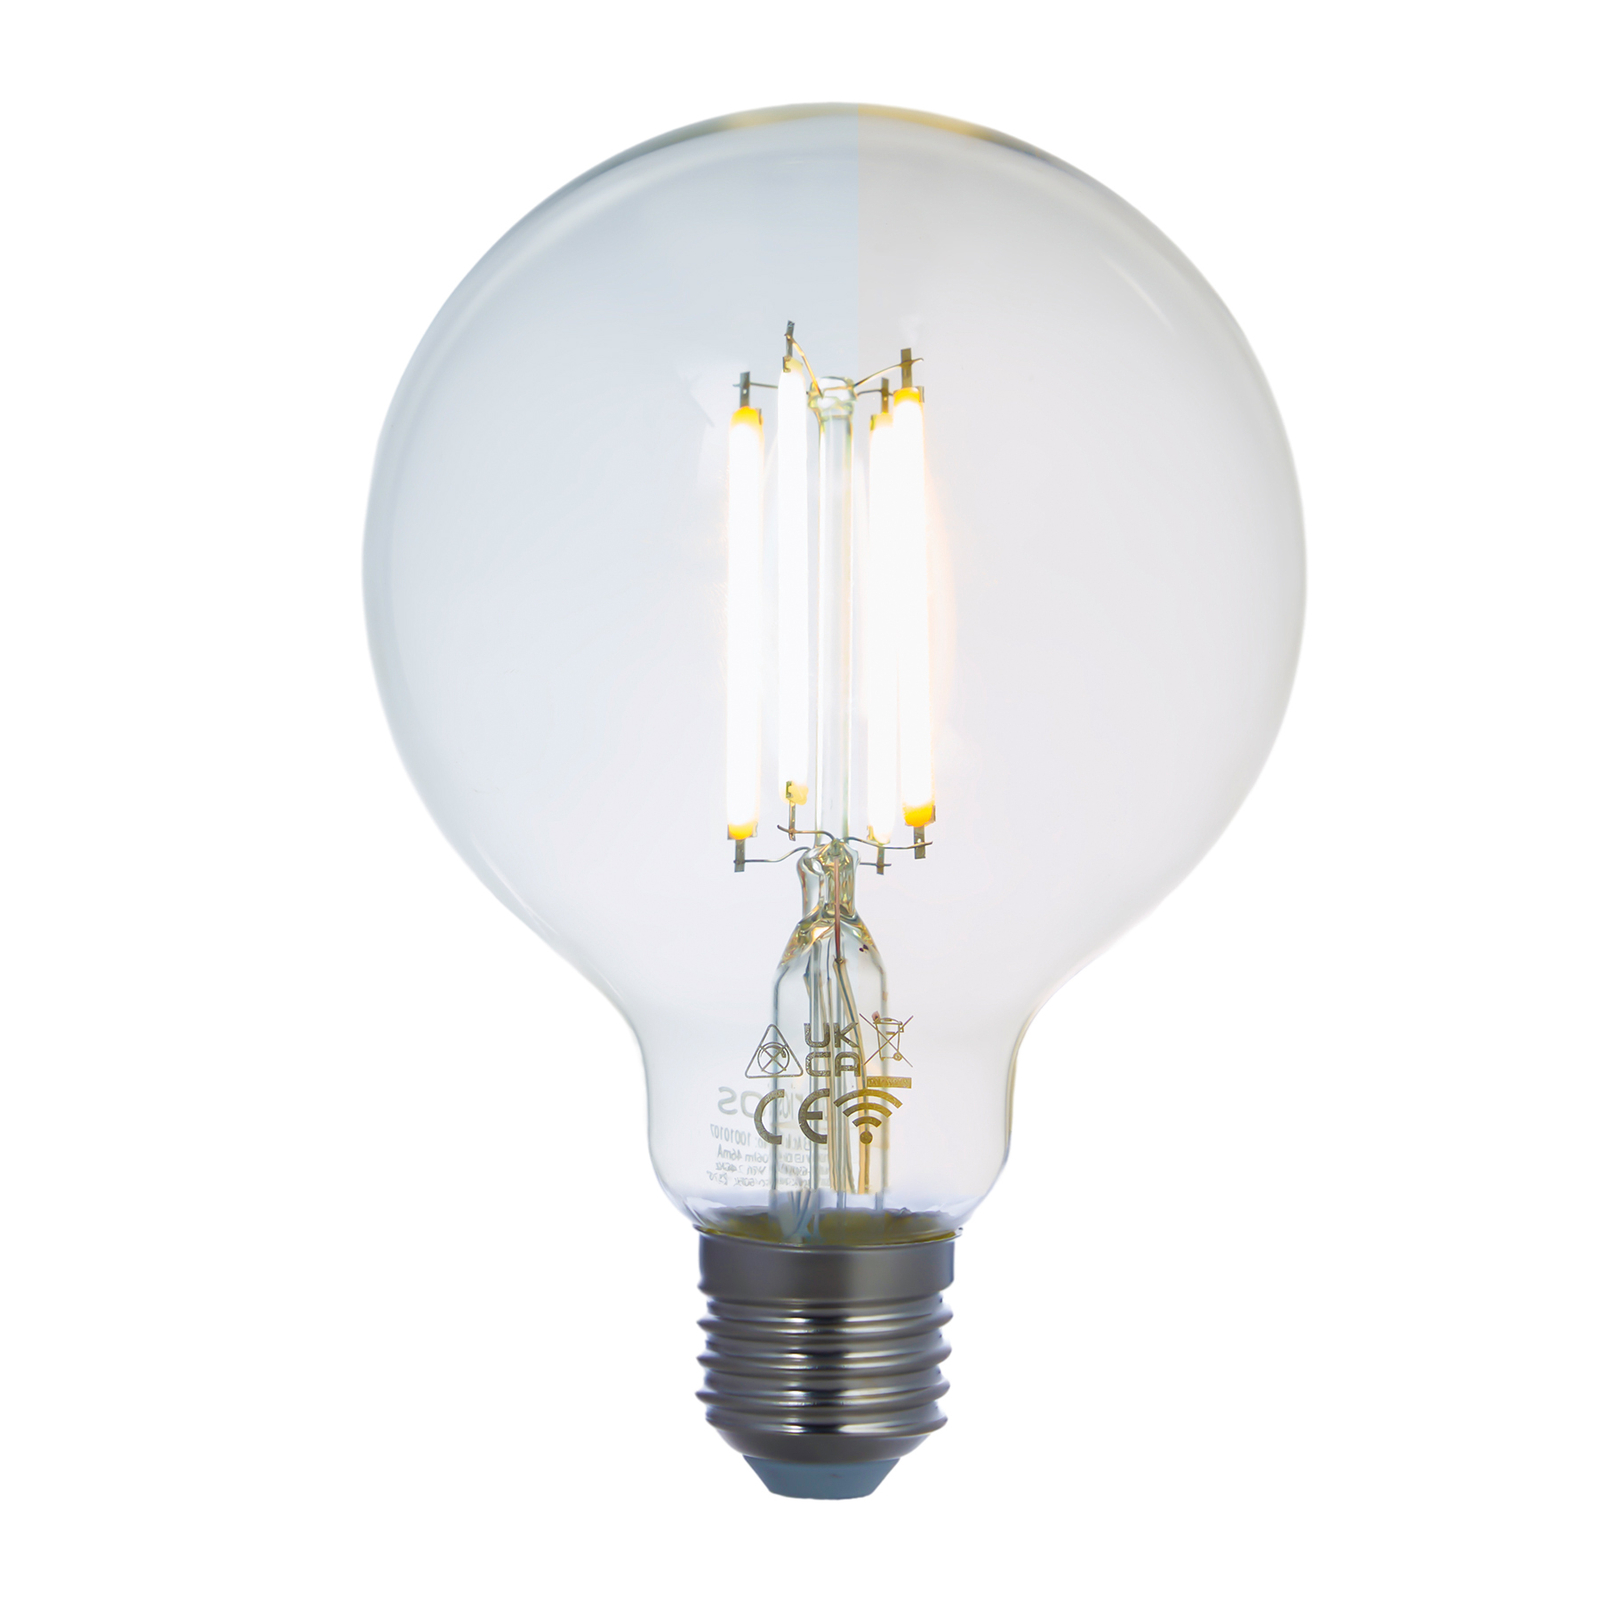 Smart LED-Lampe E27 G95 7W WLAN klar tunable white